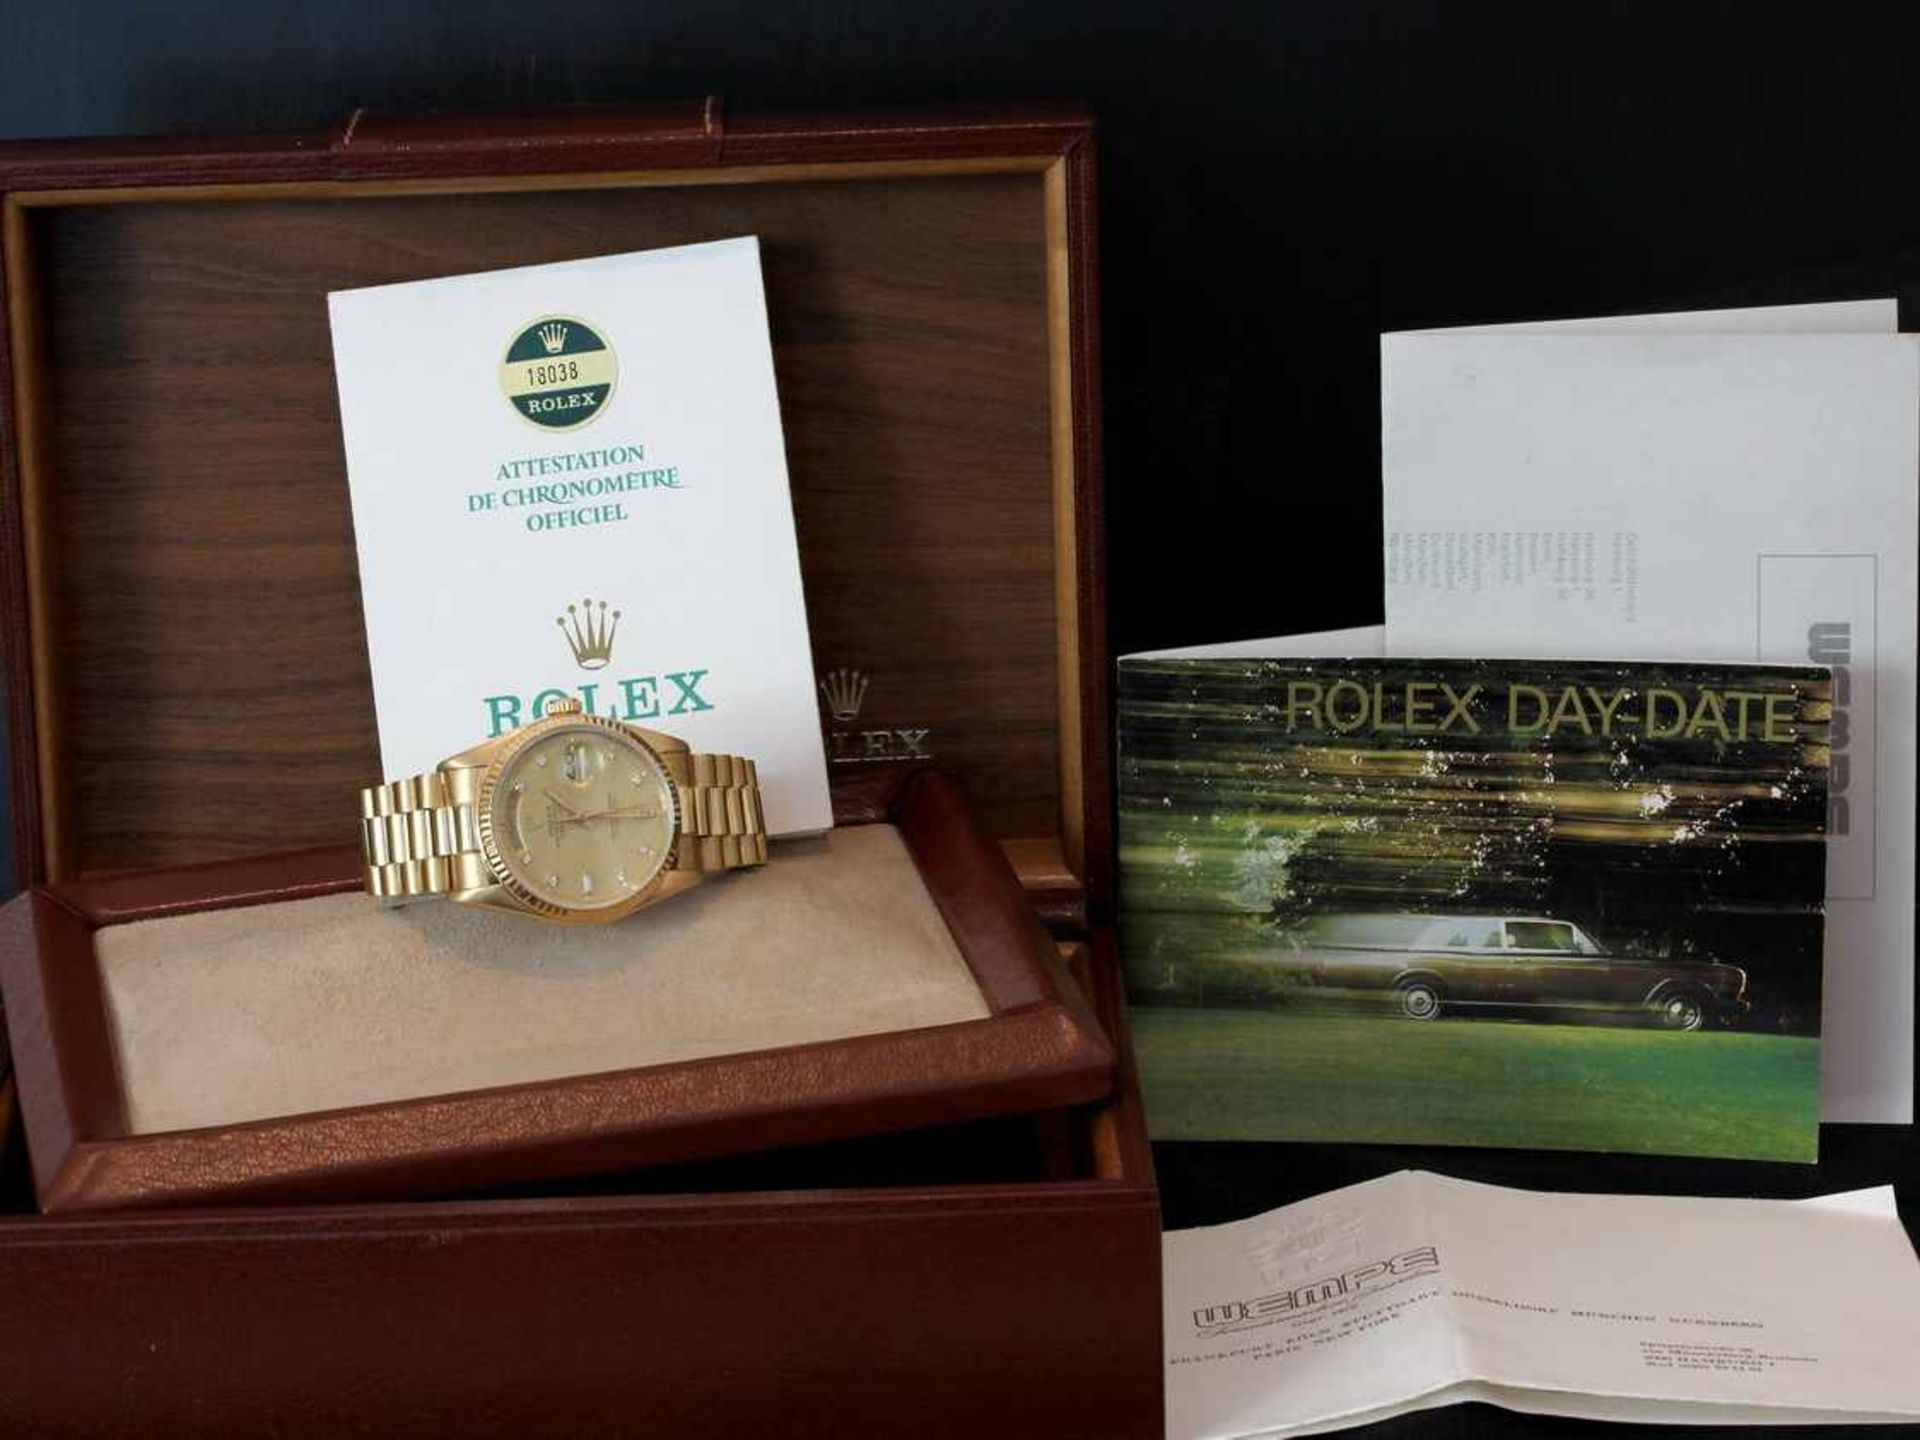 Rolex Day-DateHerrenarmbanduhr in Gold gearbeitet mit Brillanten auf dem Ziffernblatt und einer - Bild 2 aus 3